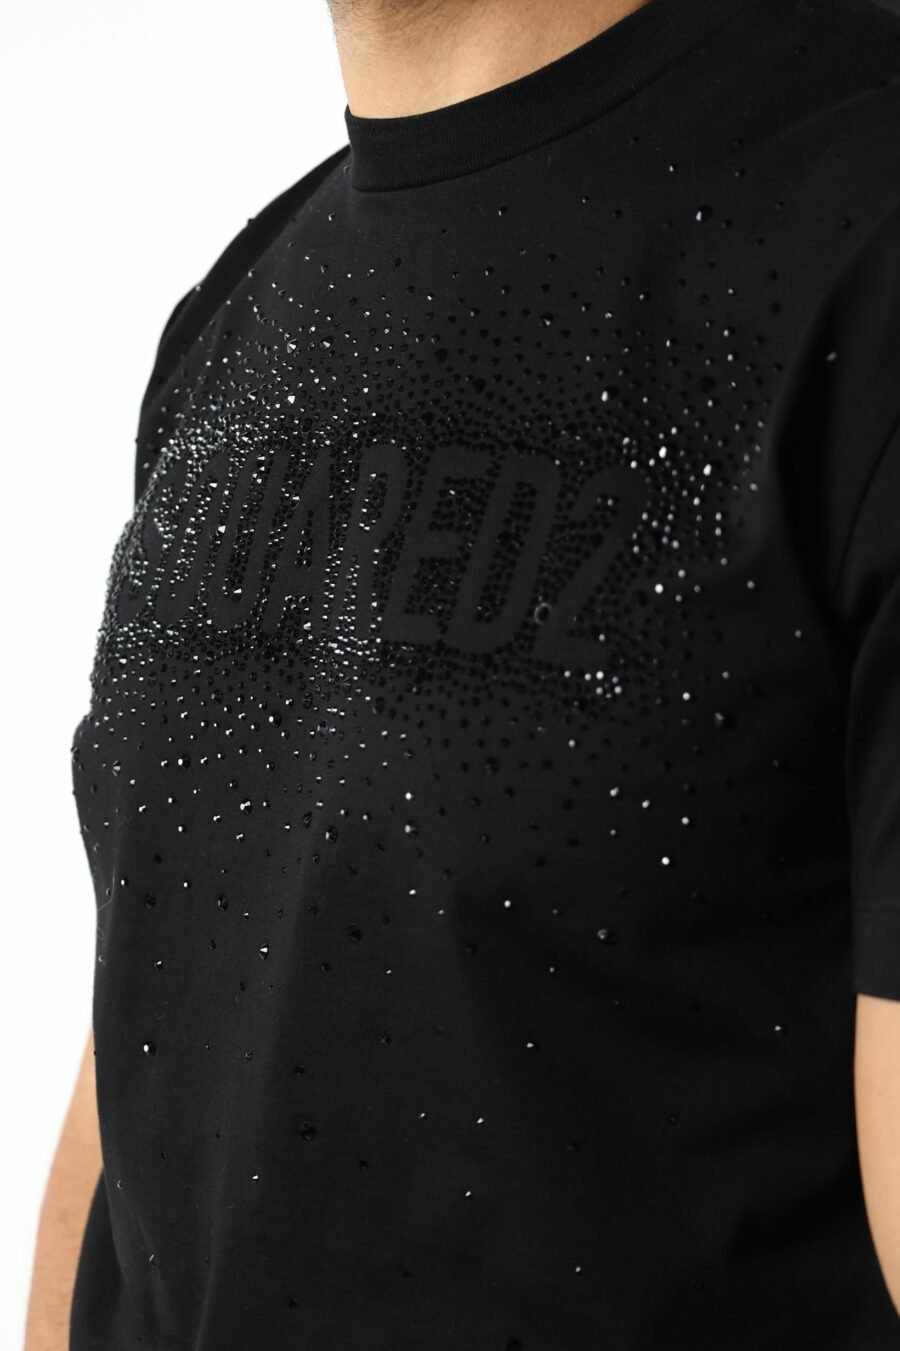 Camiseta negra con maxilogo negro en relieve - 111288